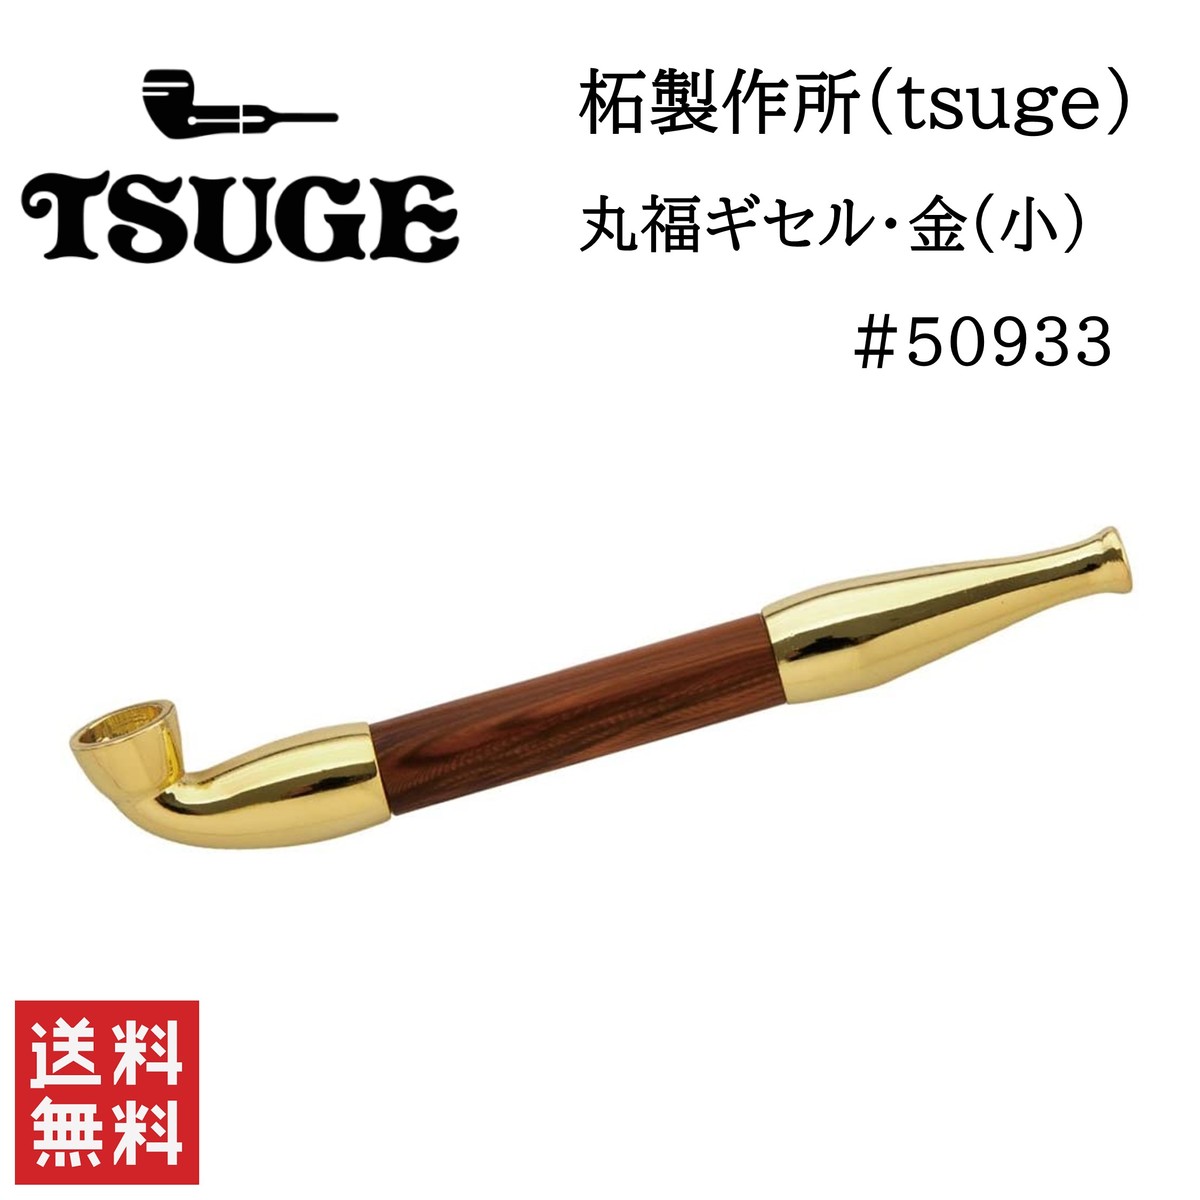 柘製作所 tsuge 丸福ギセル 金 小 #50933 喫煙具 パイプ 煙管 キセル